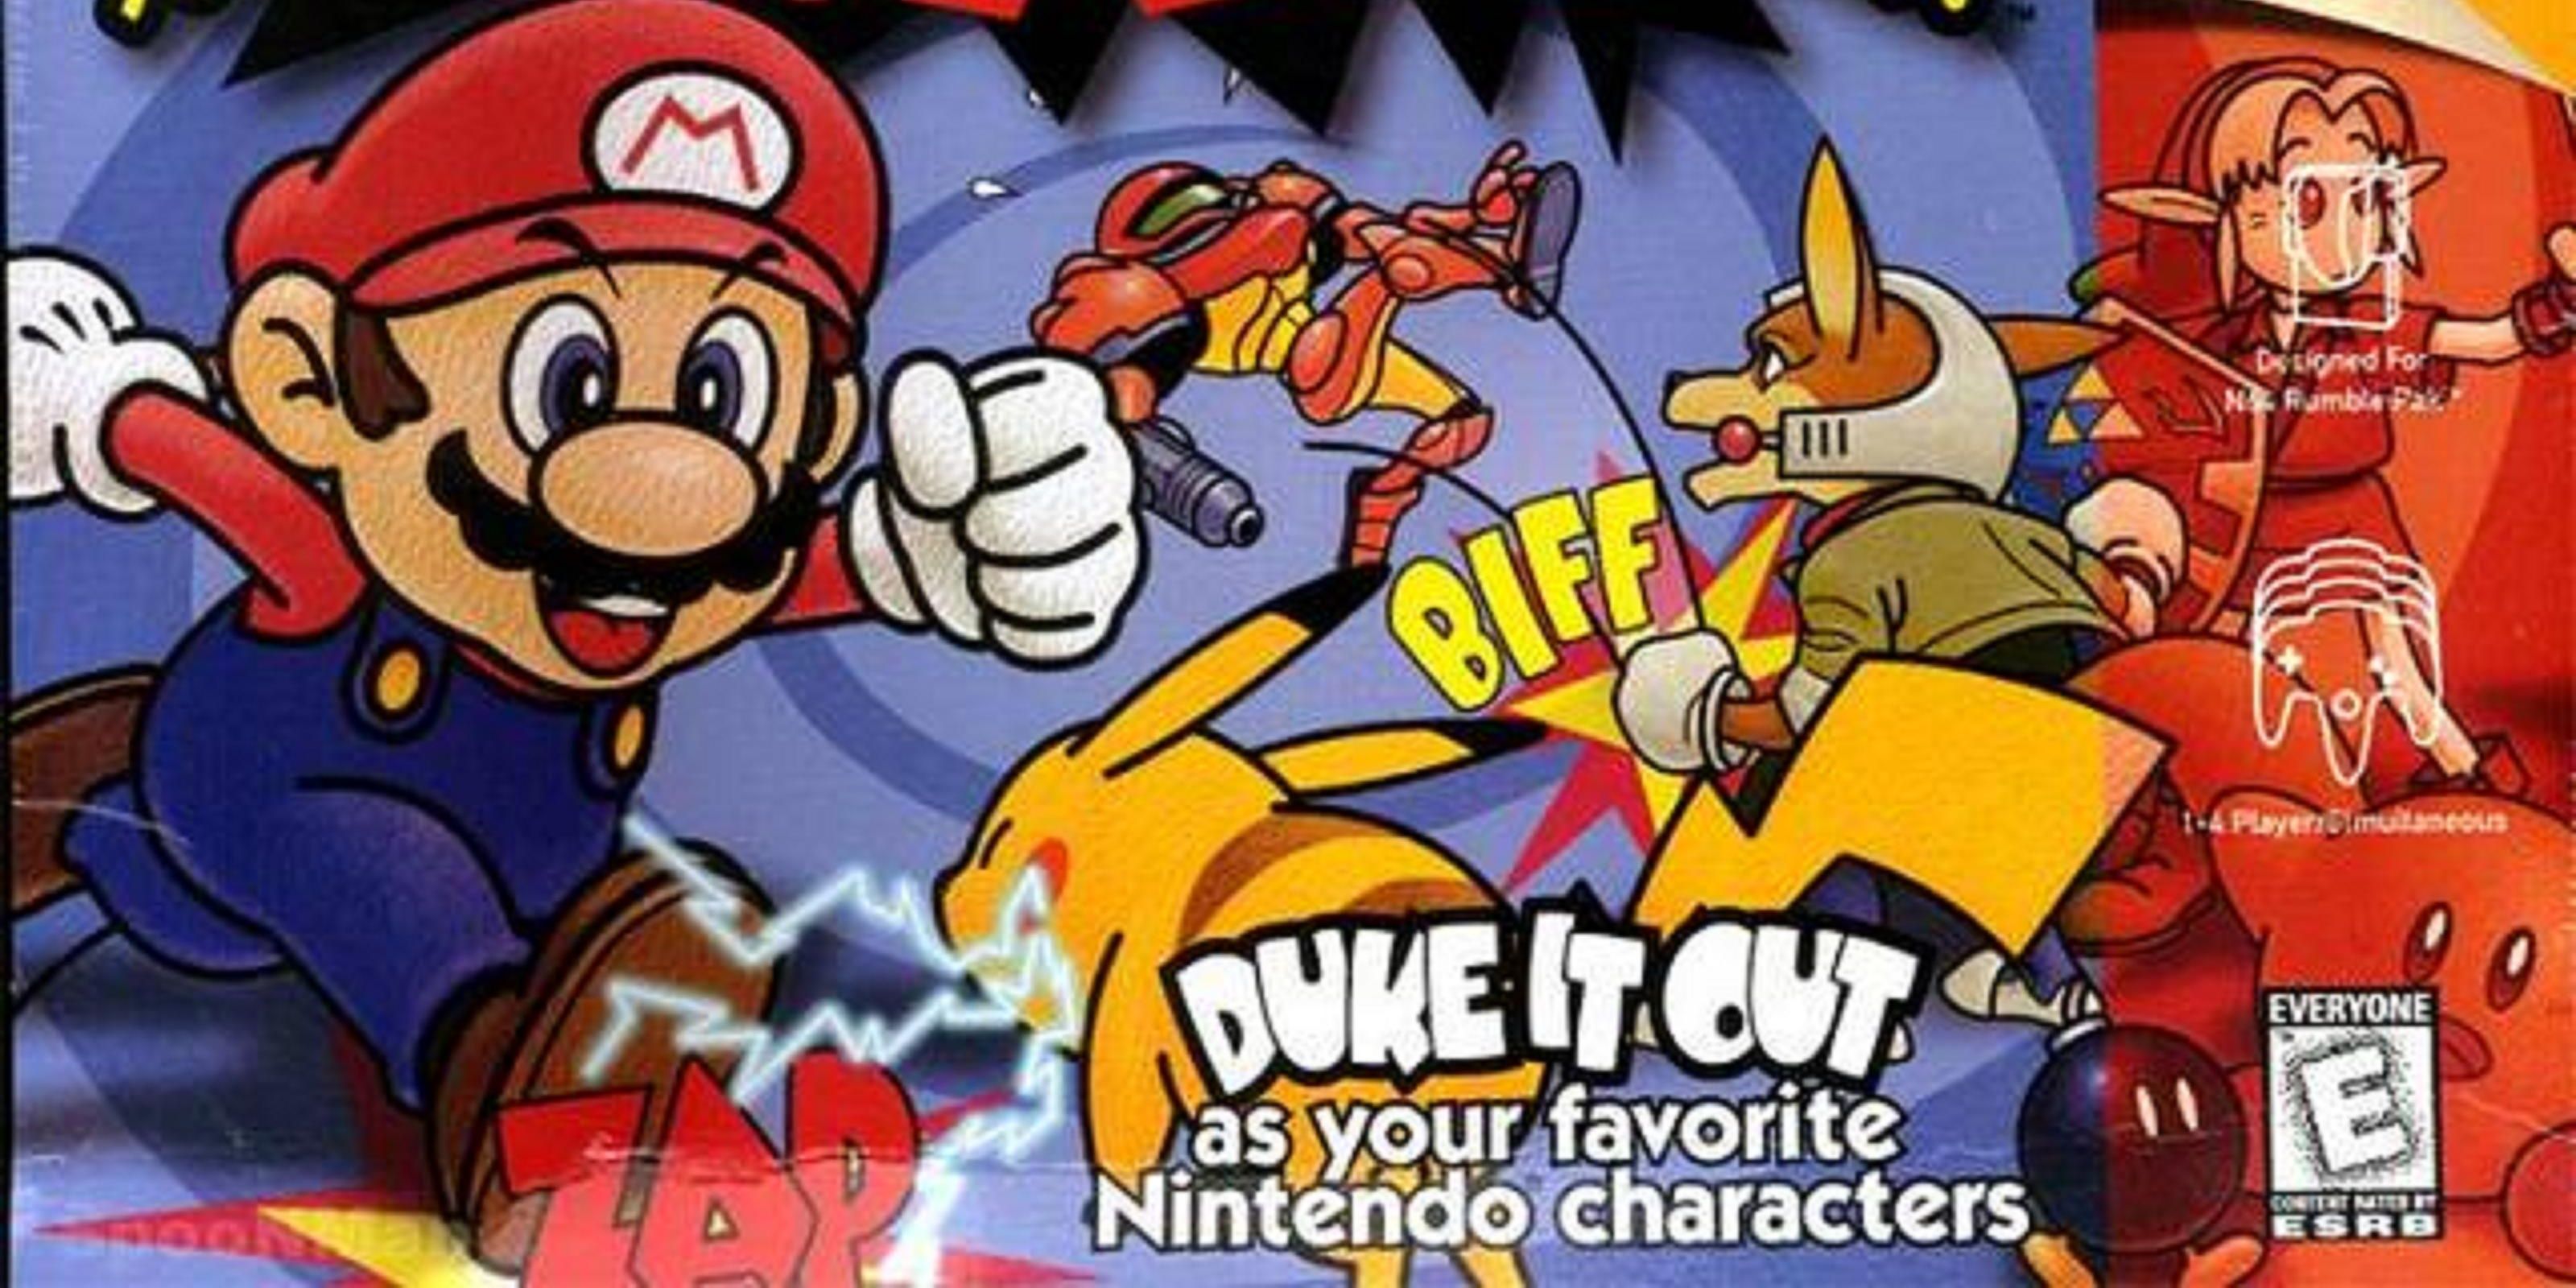 Cover art for the original Super Smash Bros for the Nintendo 64